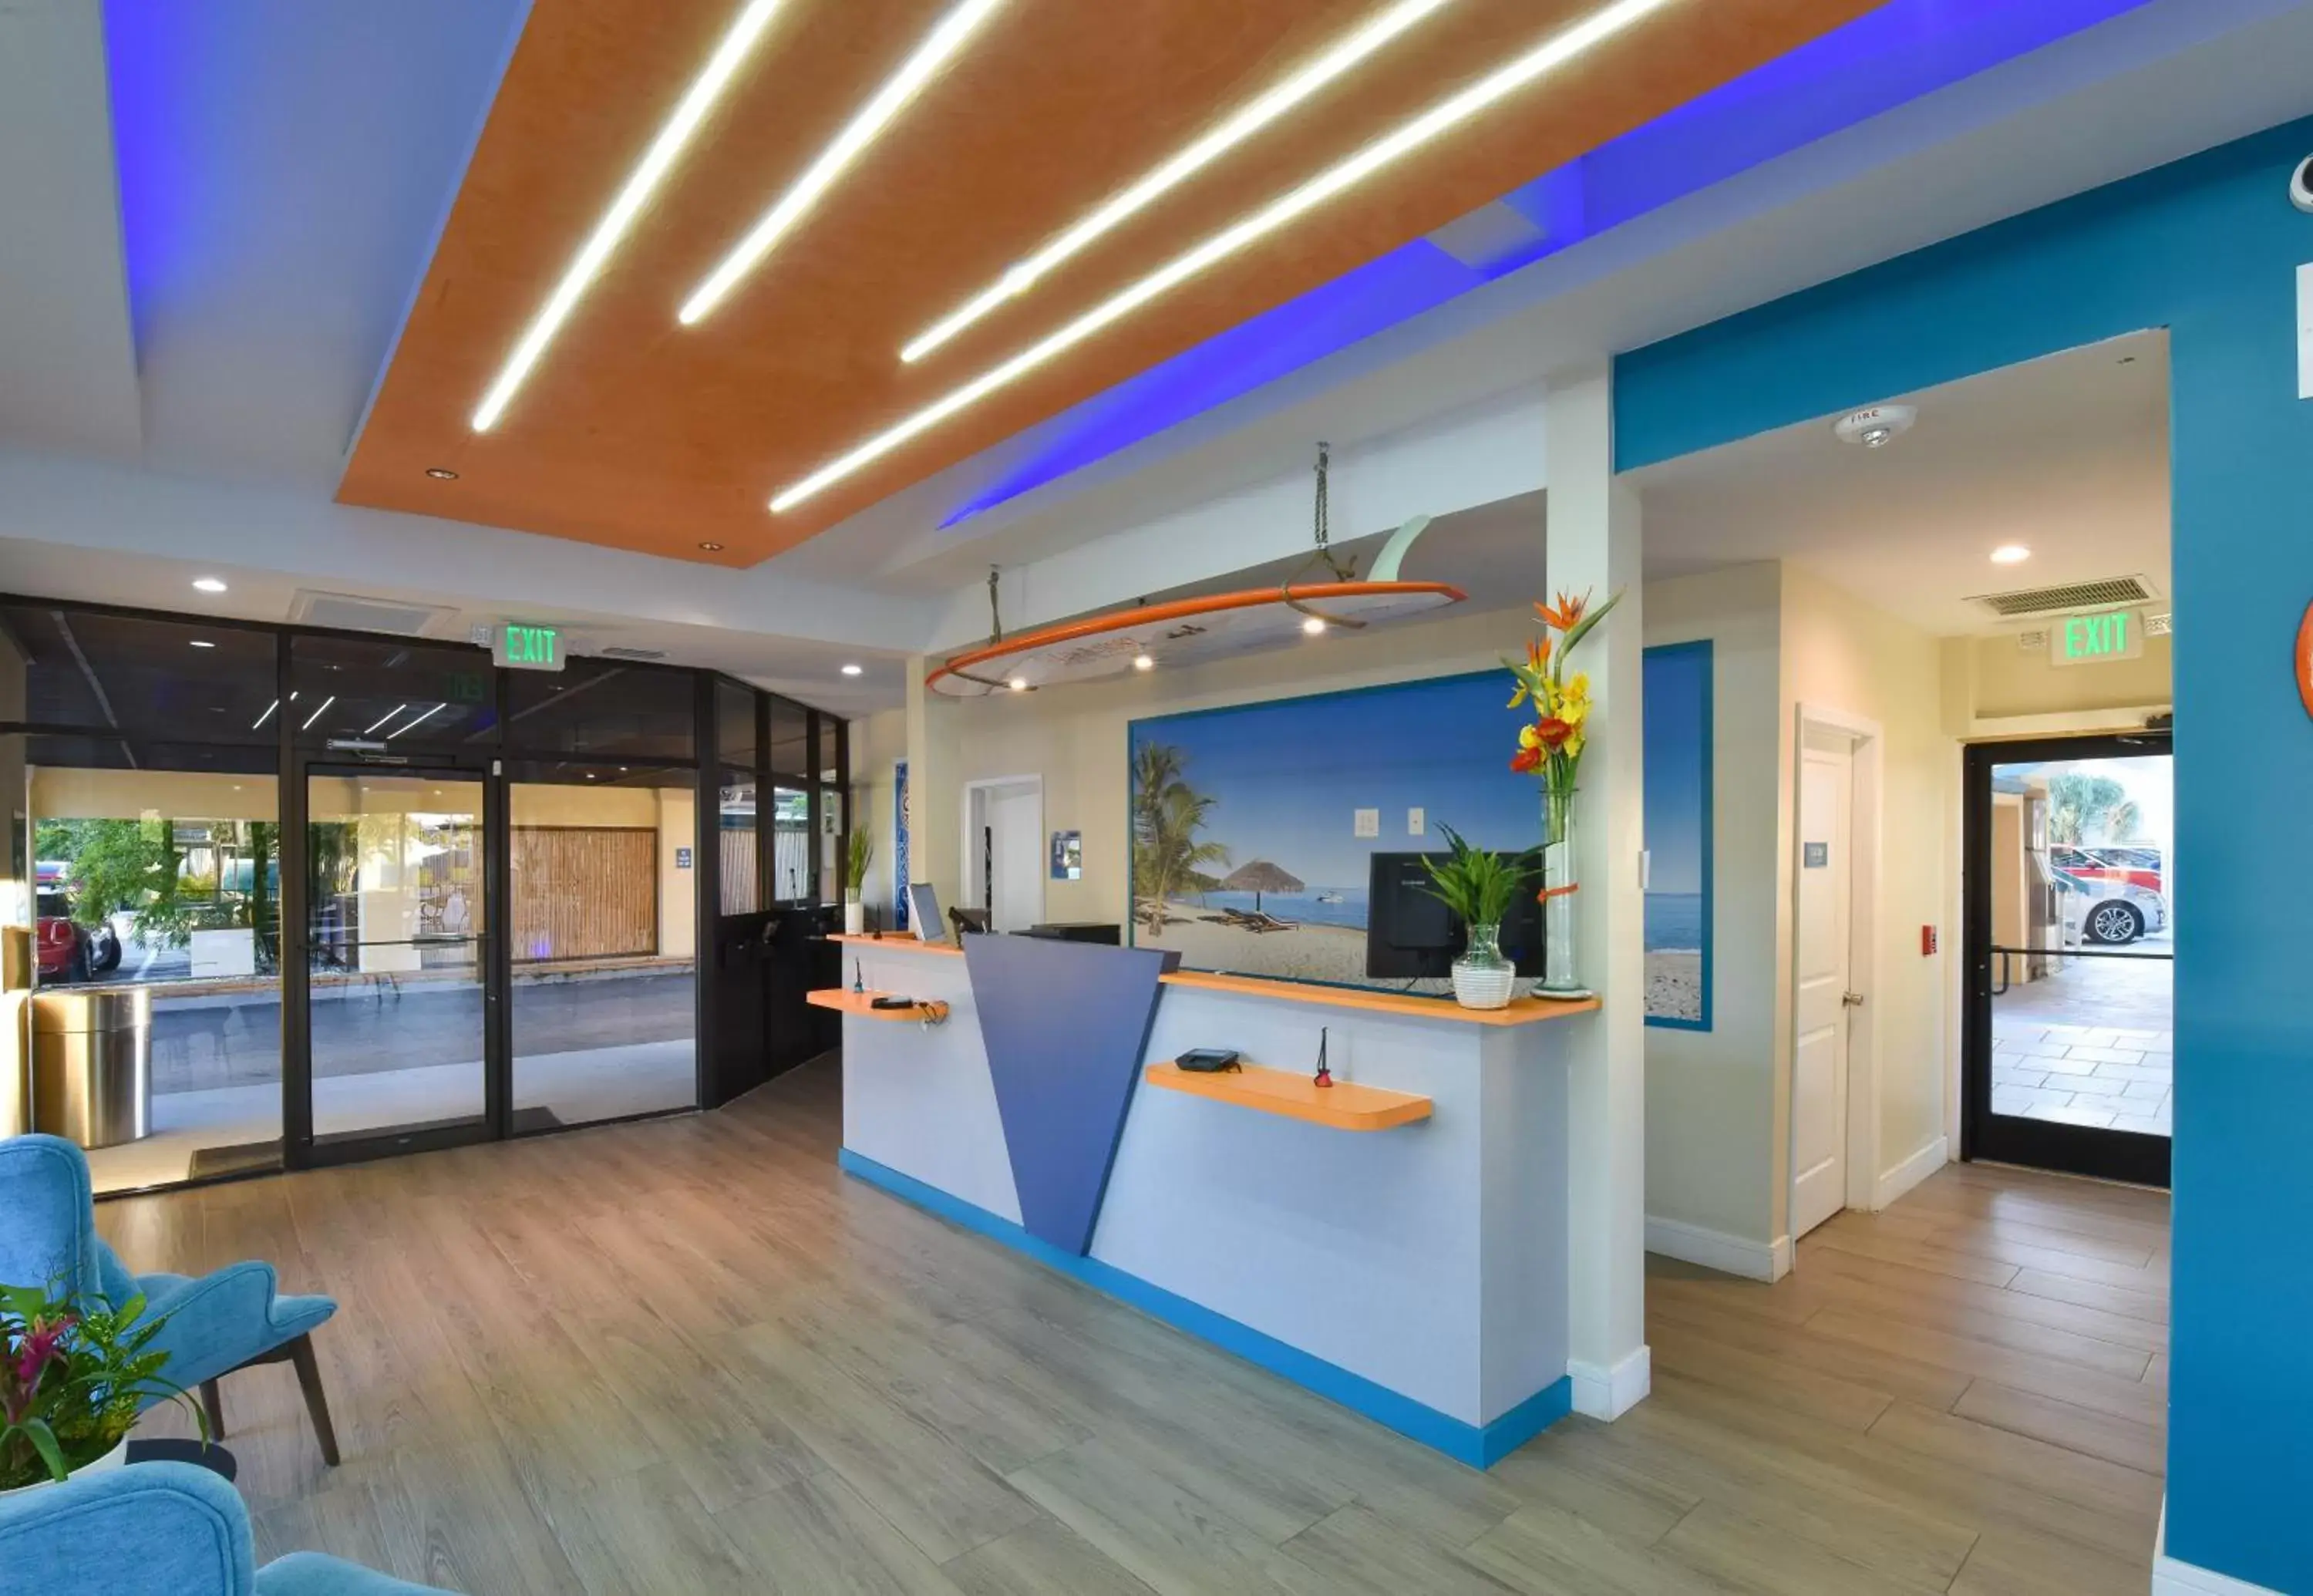 Lobby or reception, Lobby/Reception in Golden Host Resort Sarasota